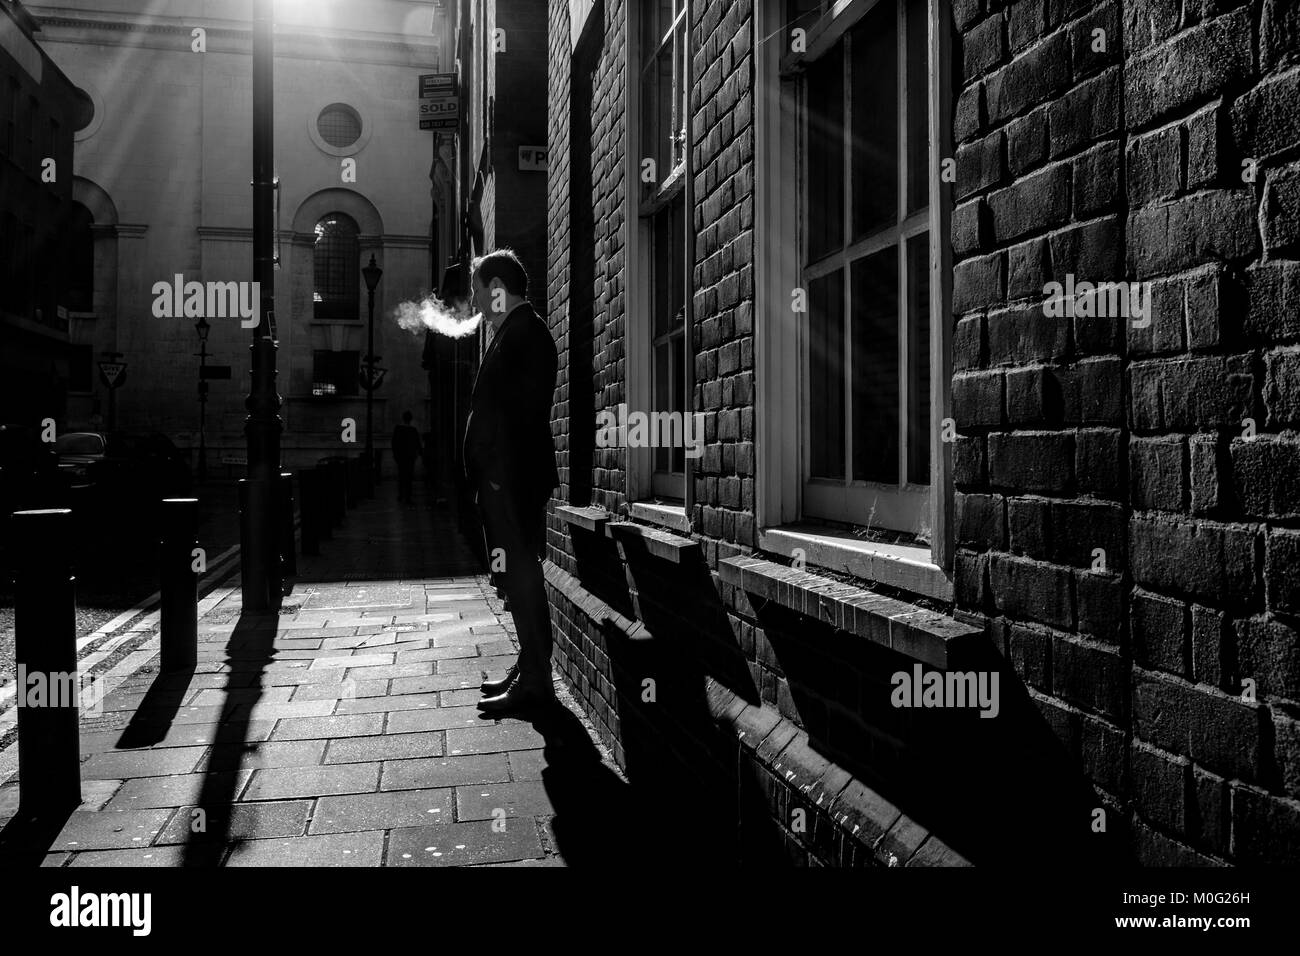 Fotografía urbana en blanco y negro de Londres: Hombre fumando en la calle. Foto de stock